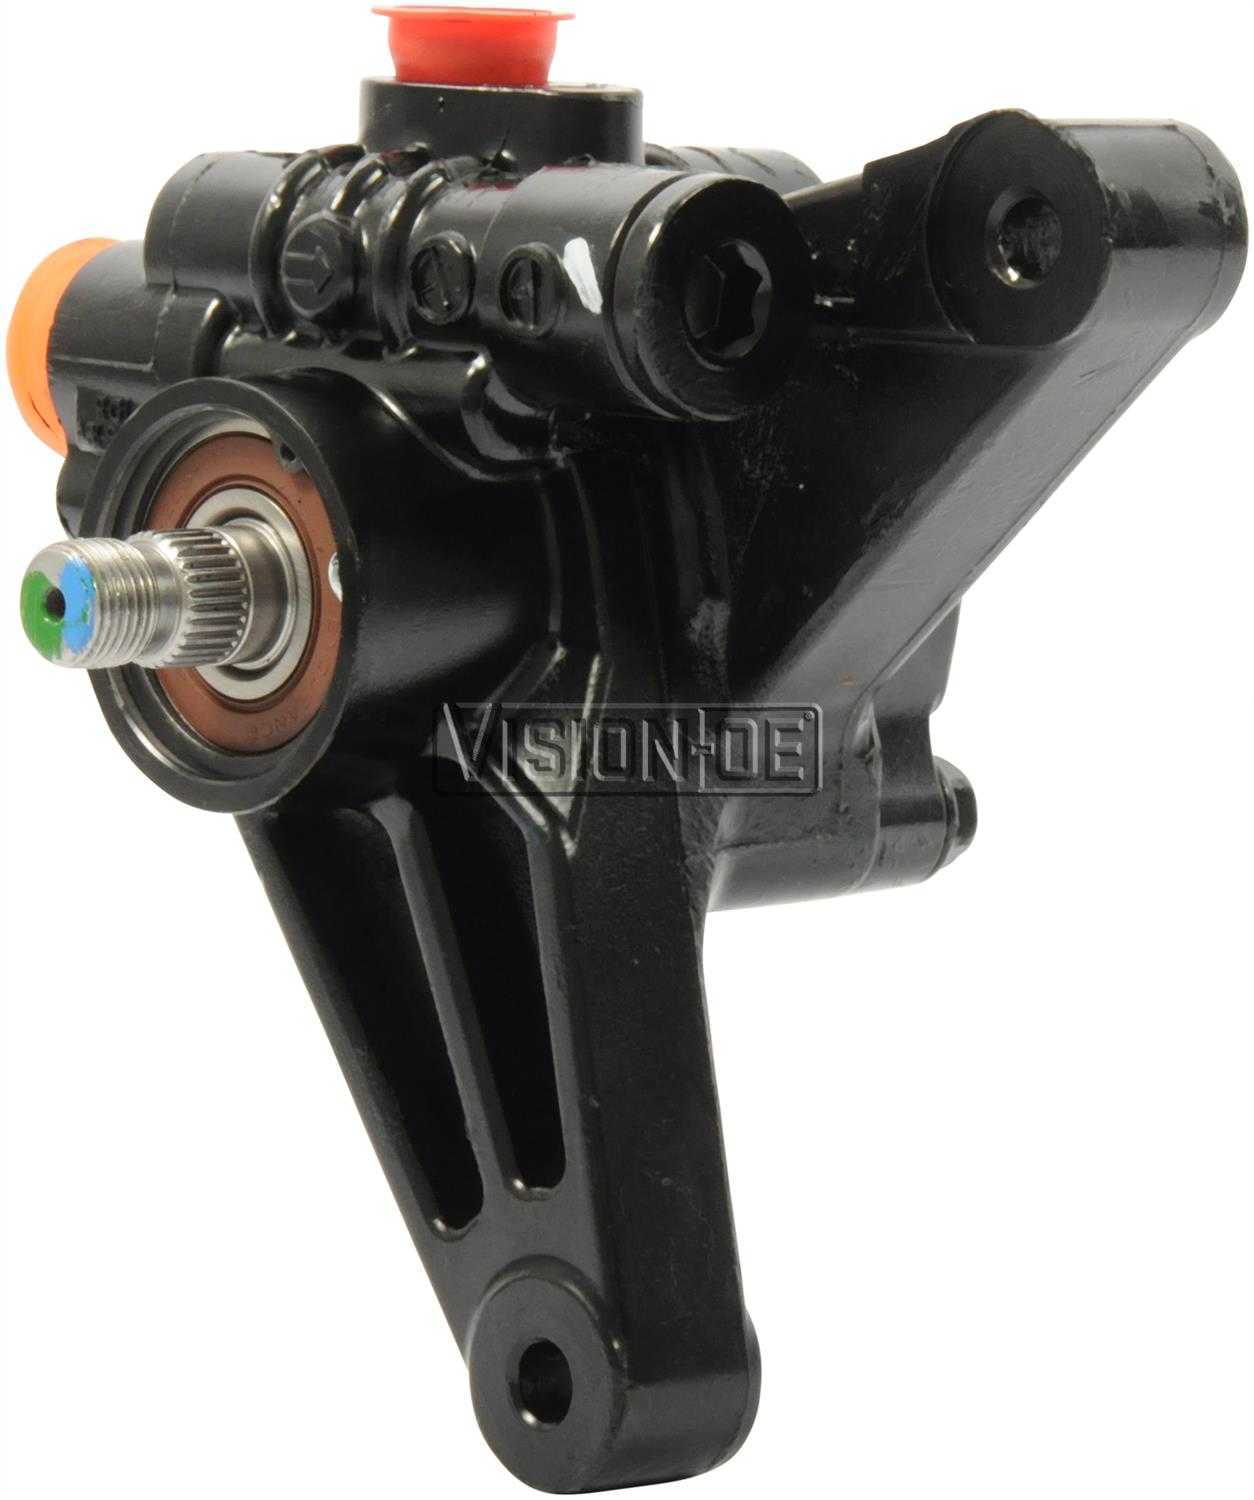 VISION-OE - Reman Power Steering Pump - VOE 990-0547